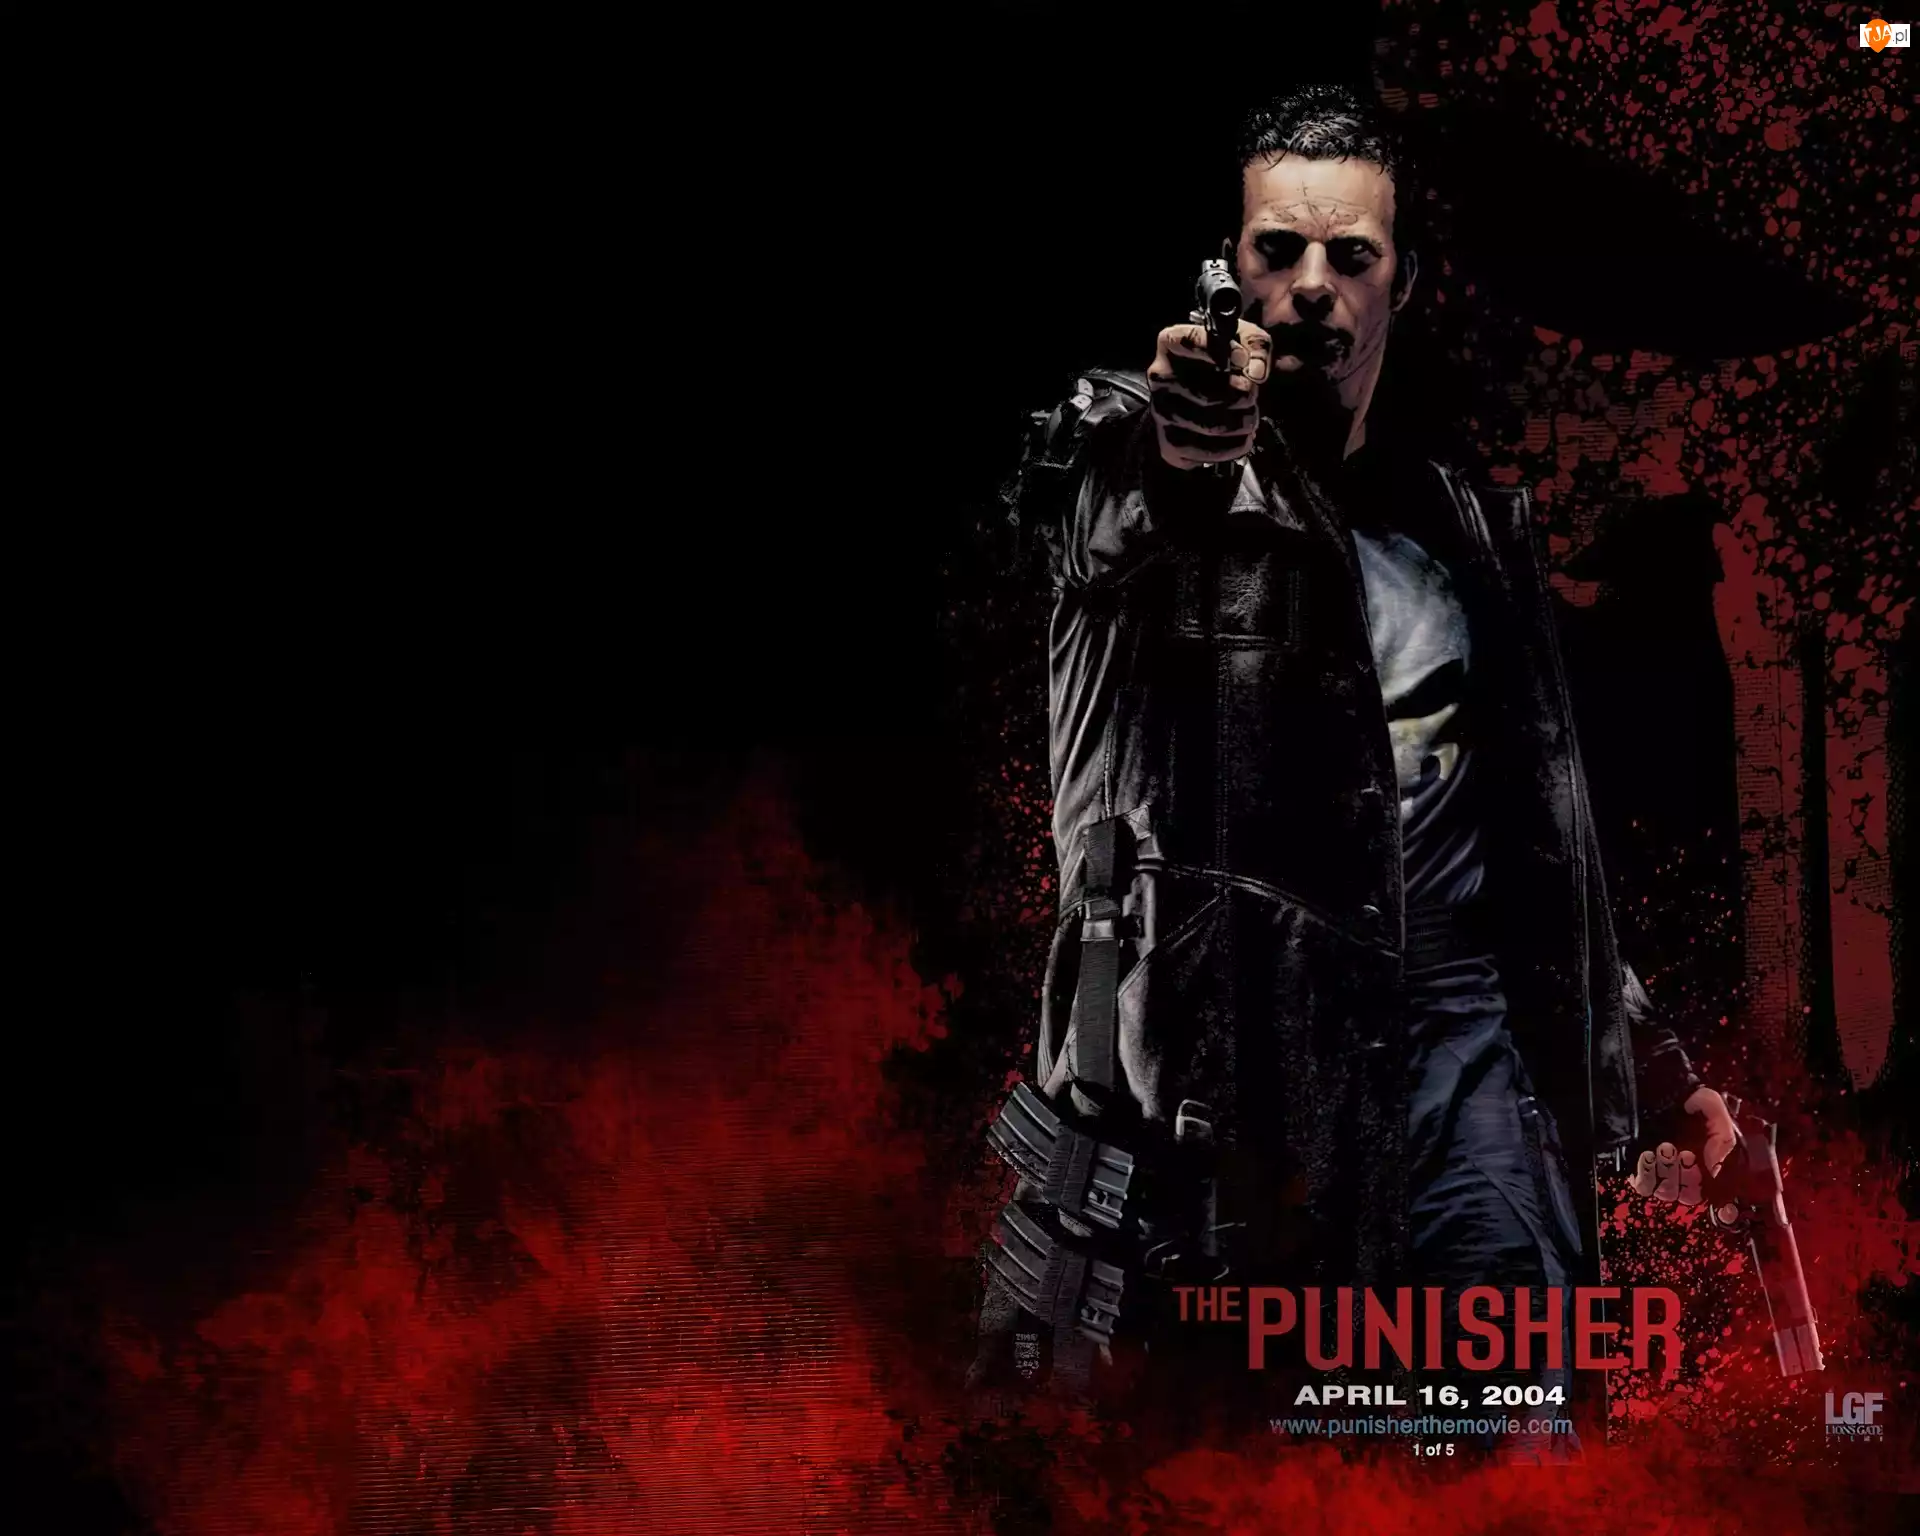 Pistolety, The Punisher, 2004